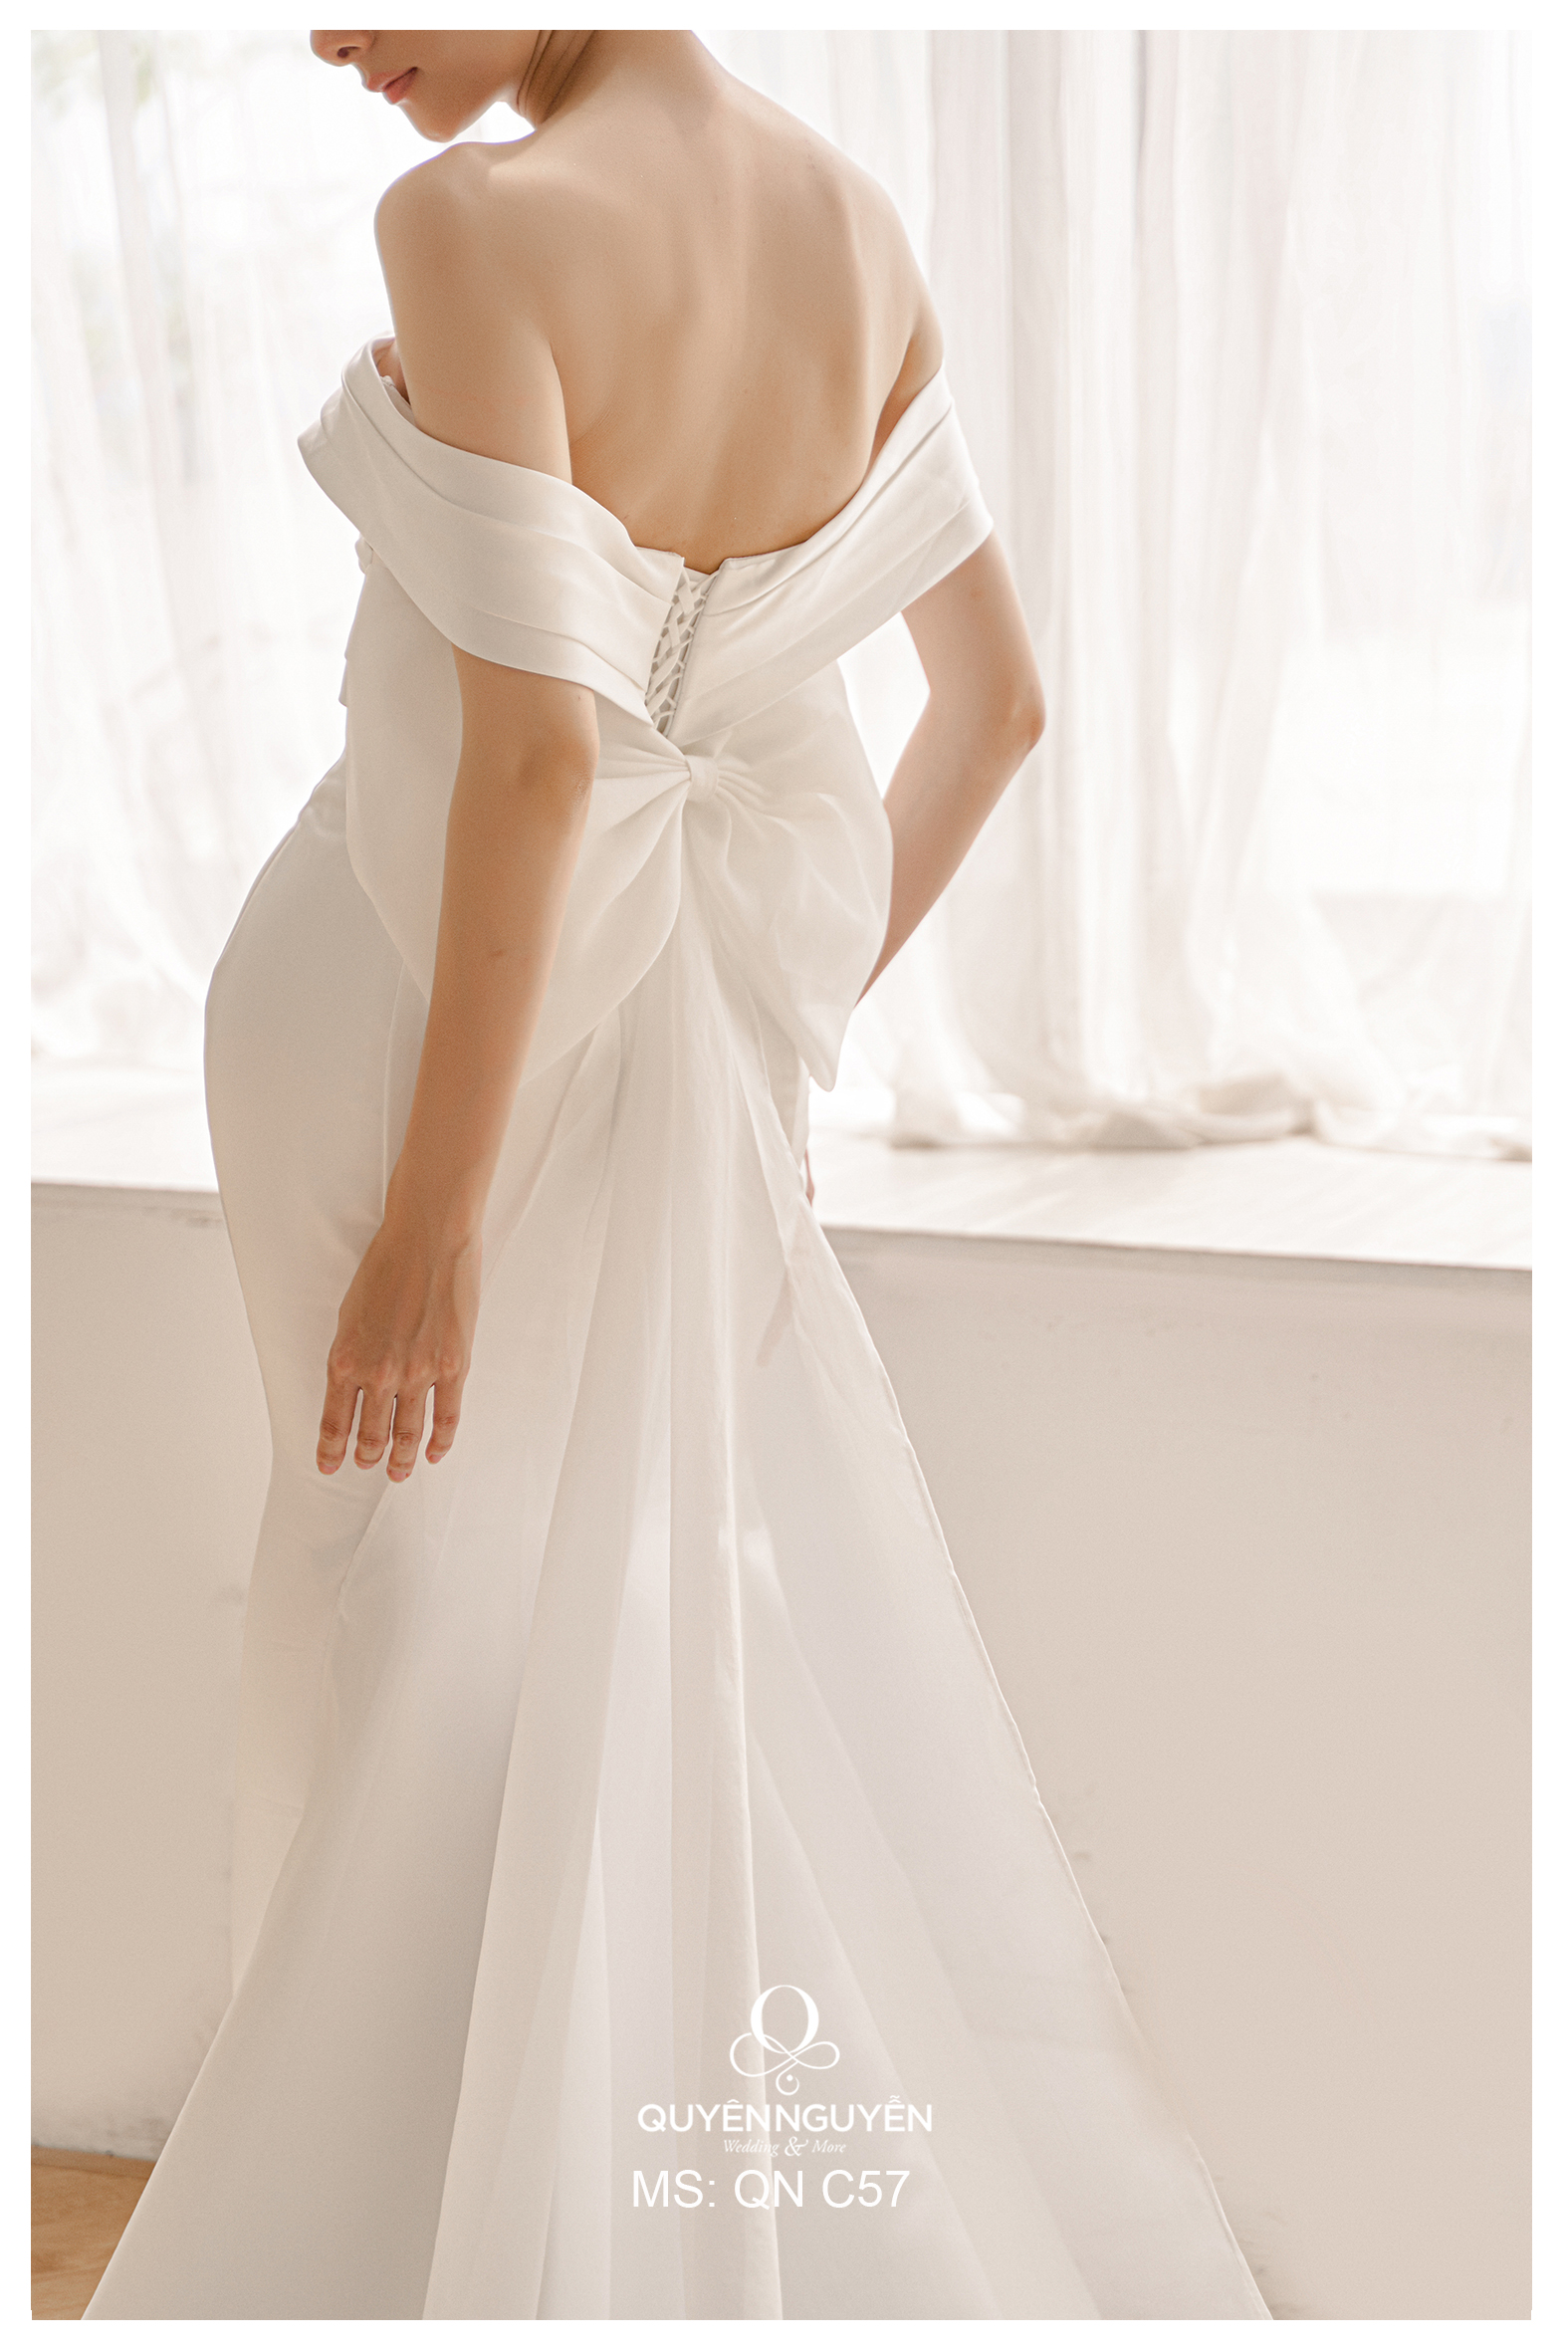 Chọn dáng váy cưới đẹp phù hợp với chất liệu vải